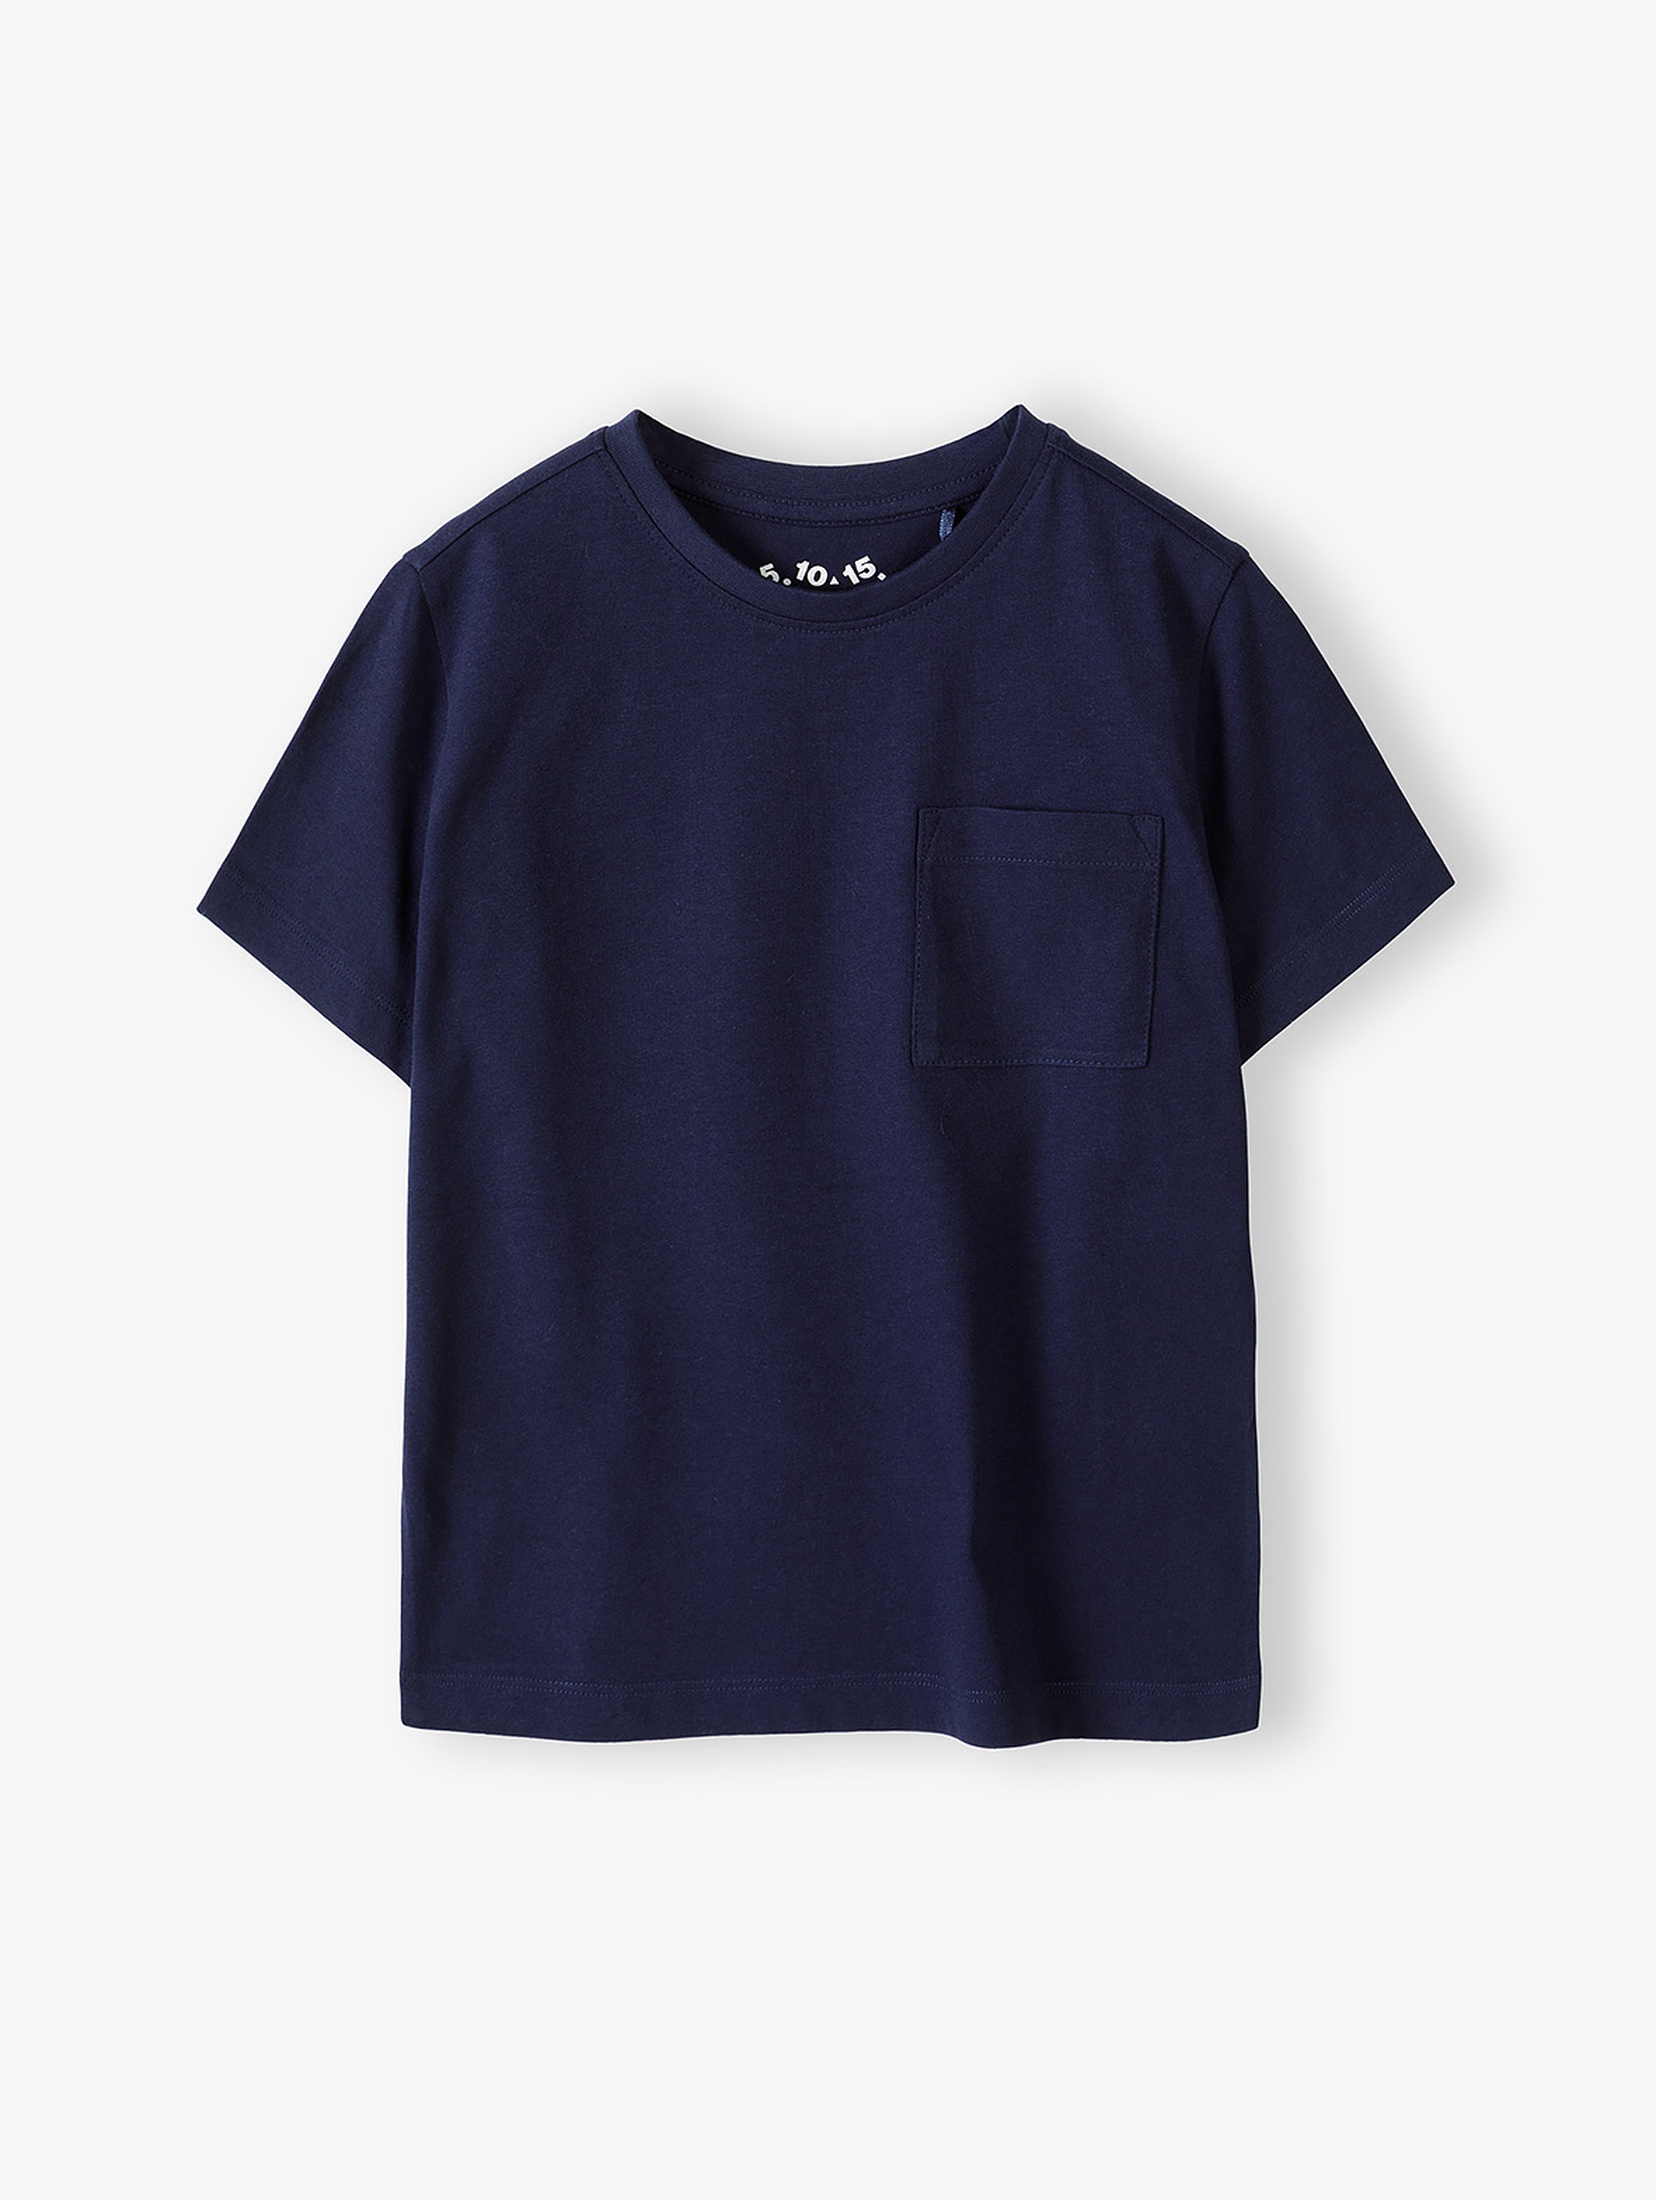 Granatowy t-shirt bawełniany z kieszonką - 5.10.15.